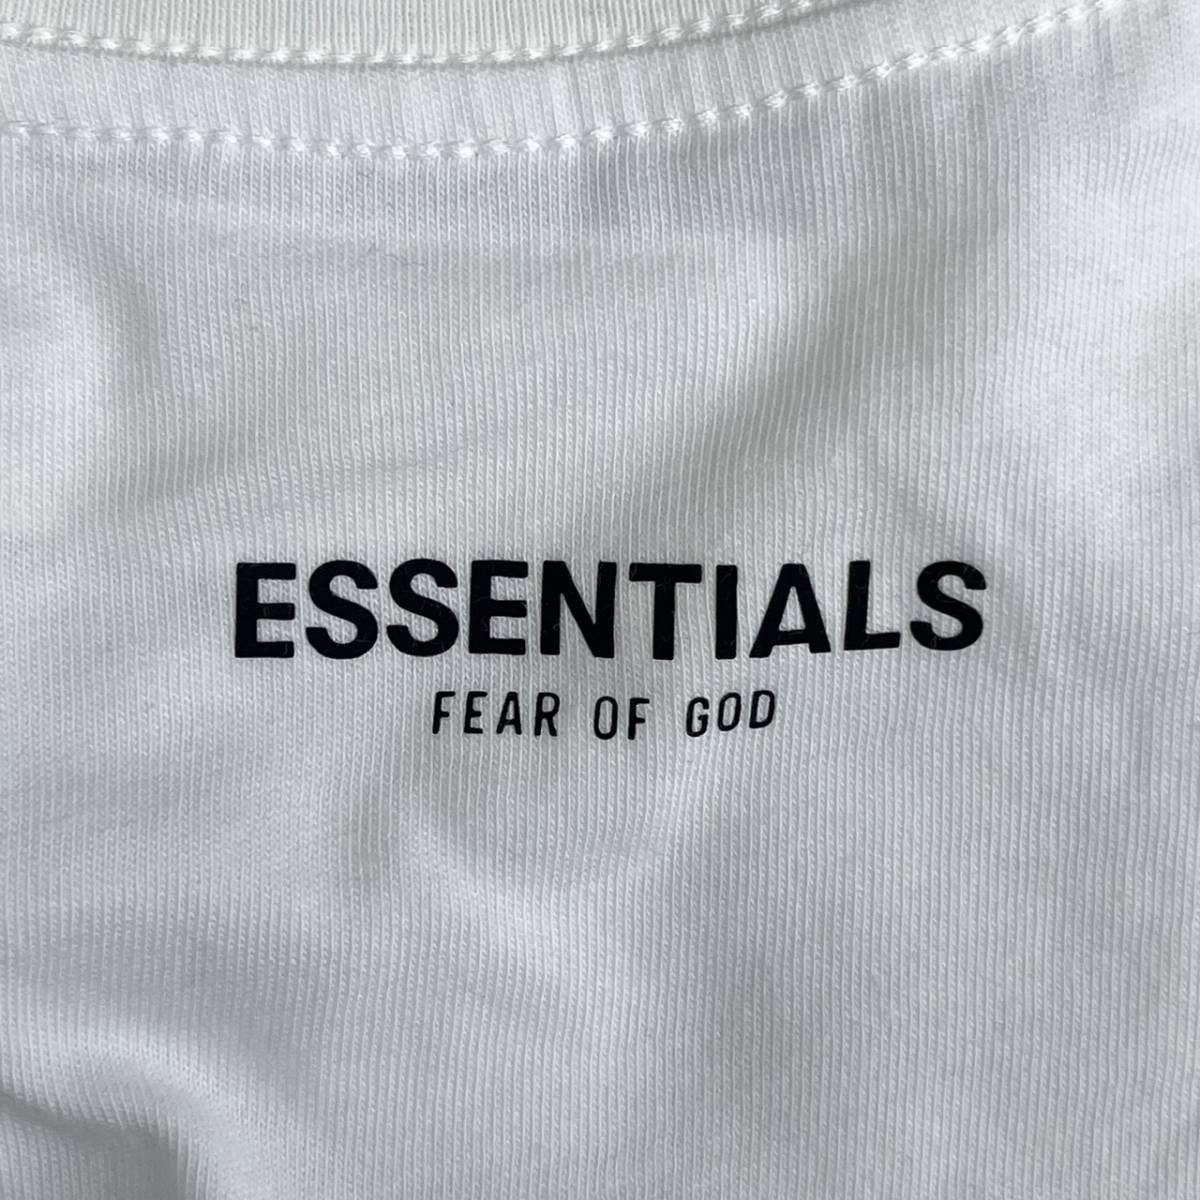 新品 FOG Fear Of God Essentials フィアオブゴッド エッセンシャルズ Mサイズ 3枚パック 3-Pack Tシャツ ホワイト